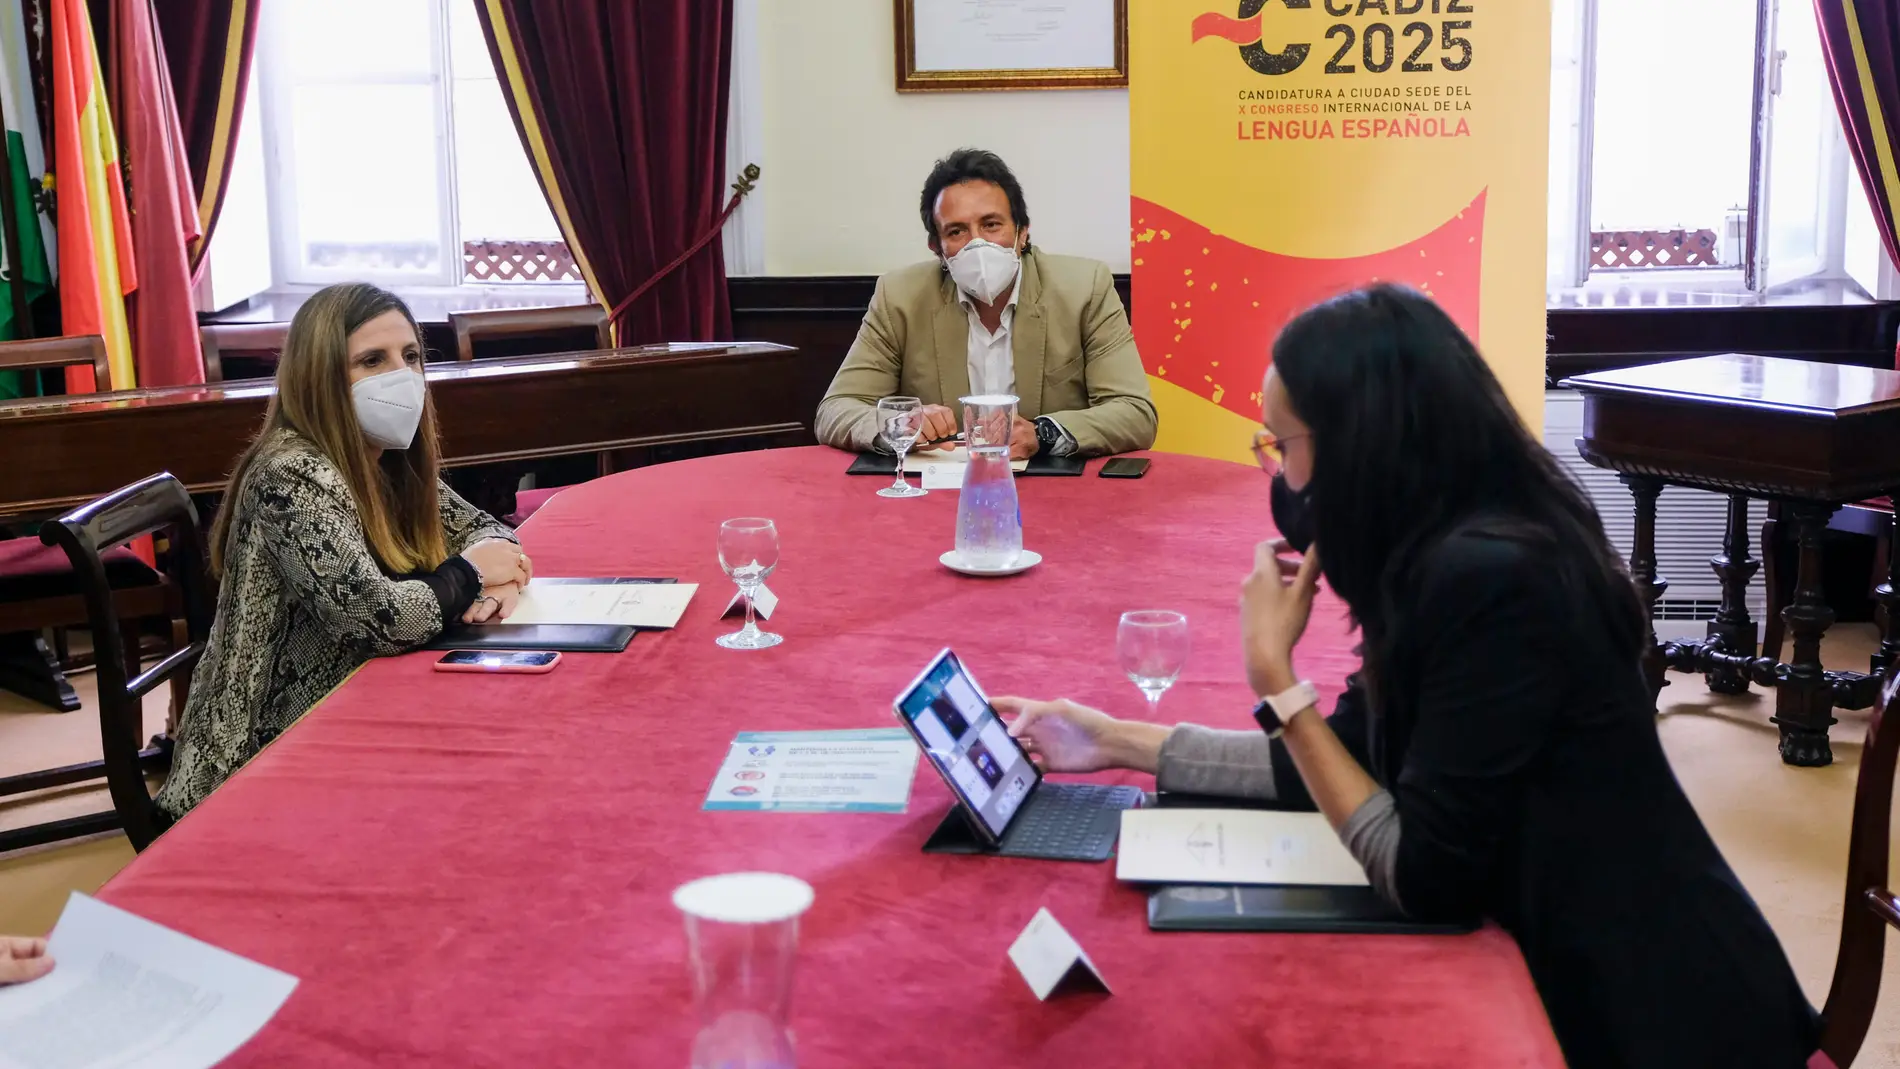 Diputación se adhiere a la candidatura de Cádiz para albergar el X Congreso de la Lengua Española